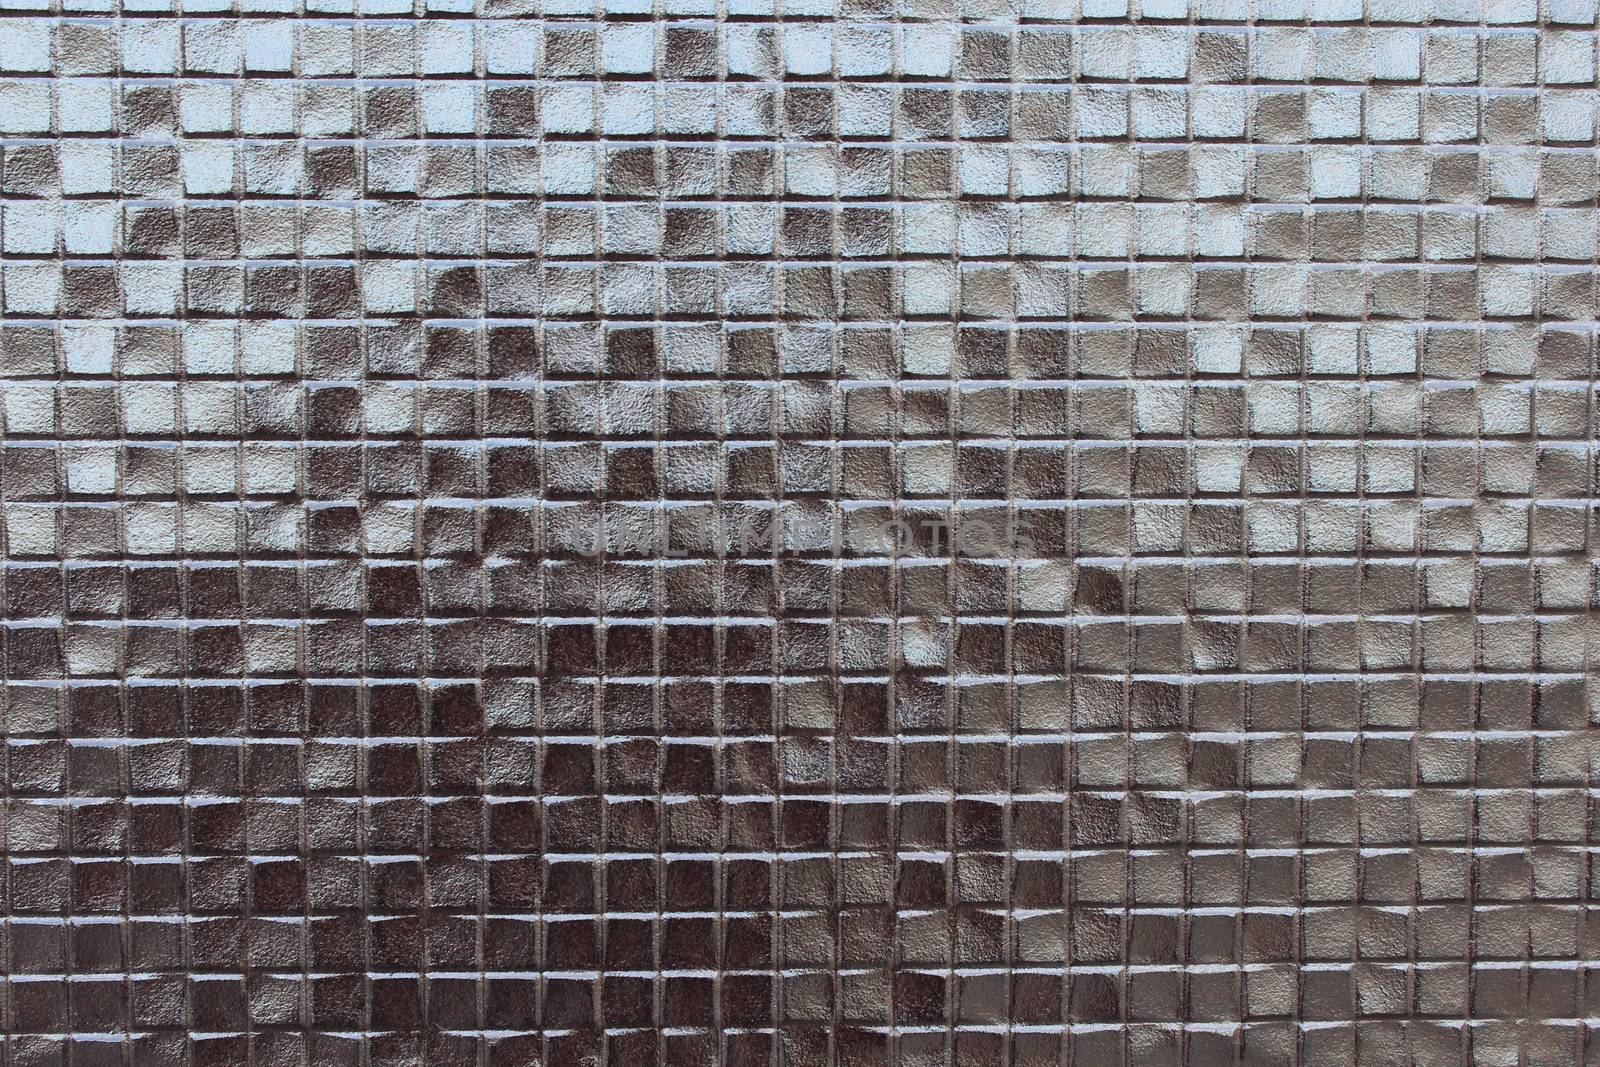 Mosaic tile by nurjan100